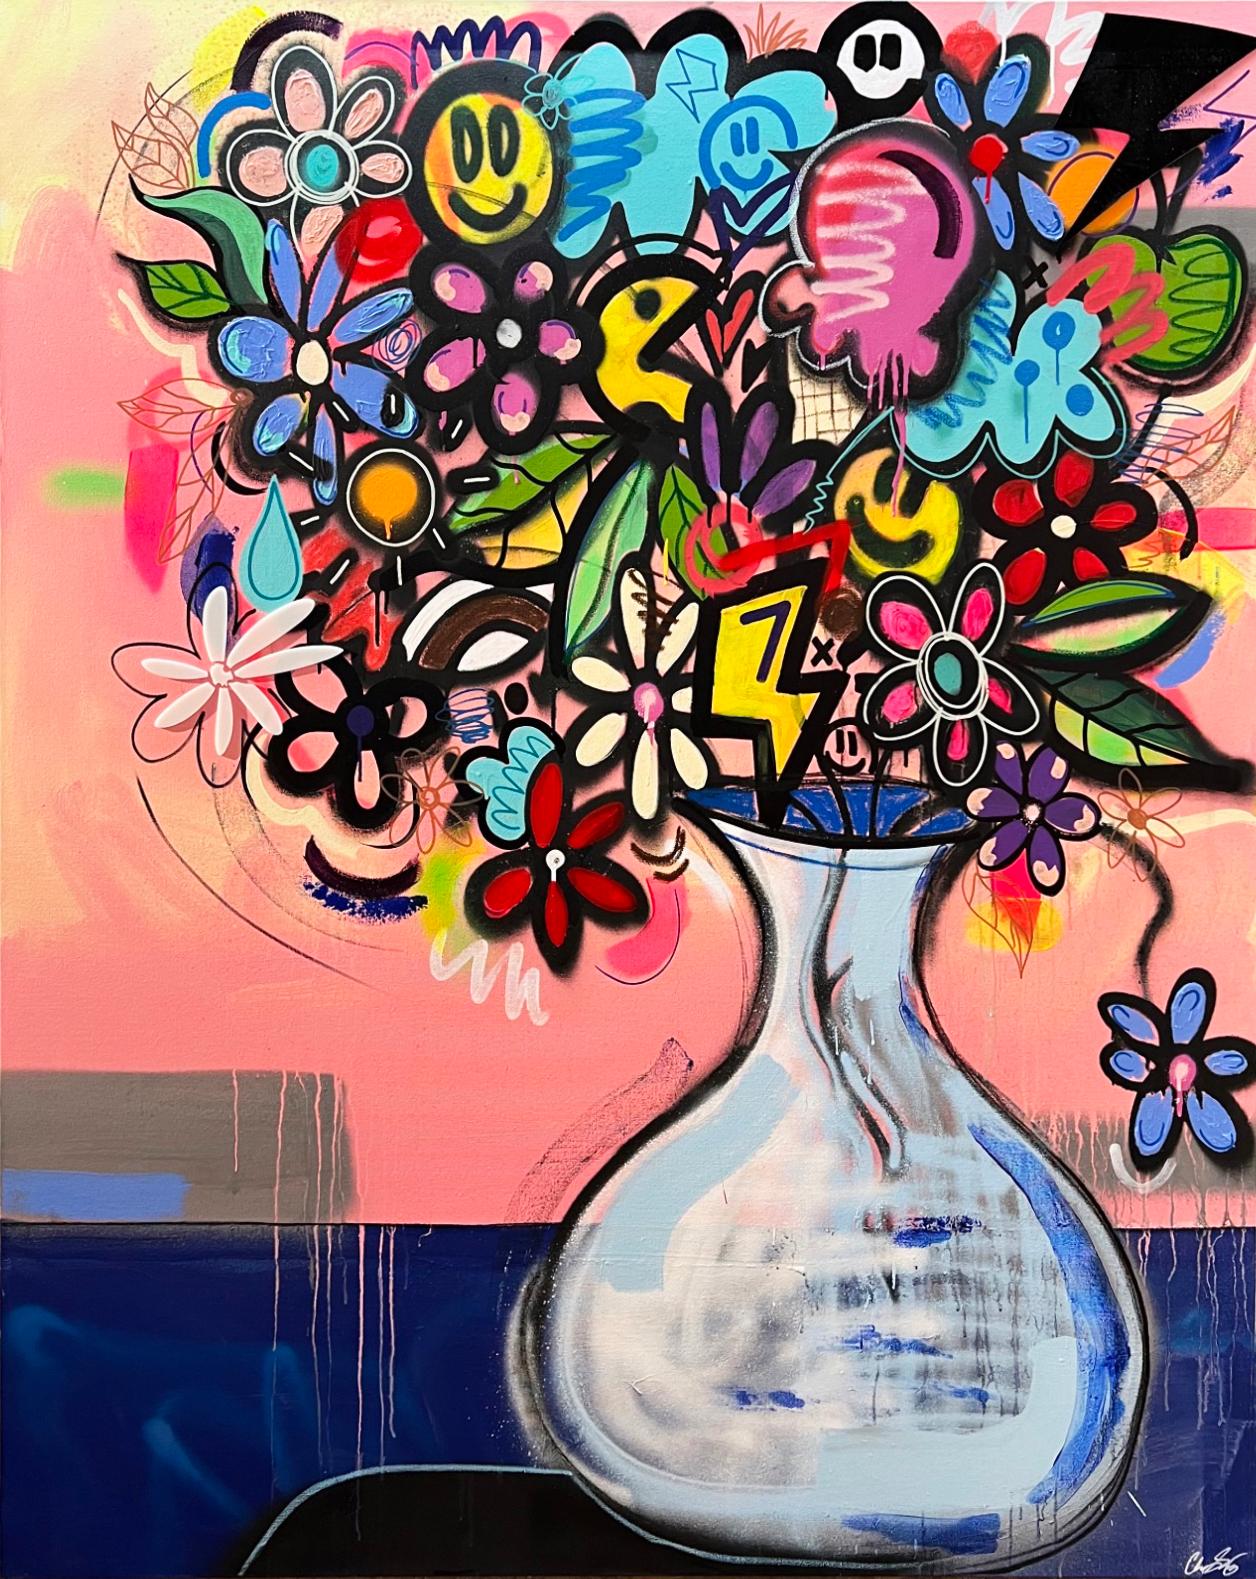 Chris Solcz Abstract Painting – Bouquet No. 1, großes Blumenstillleben mit Graffiti, Acryl auf Leinwand, 2022